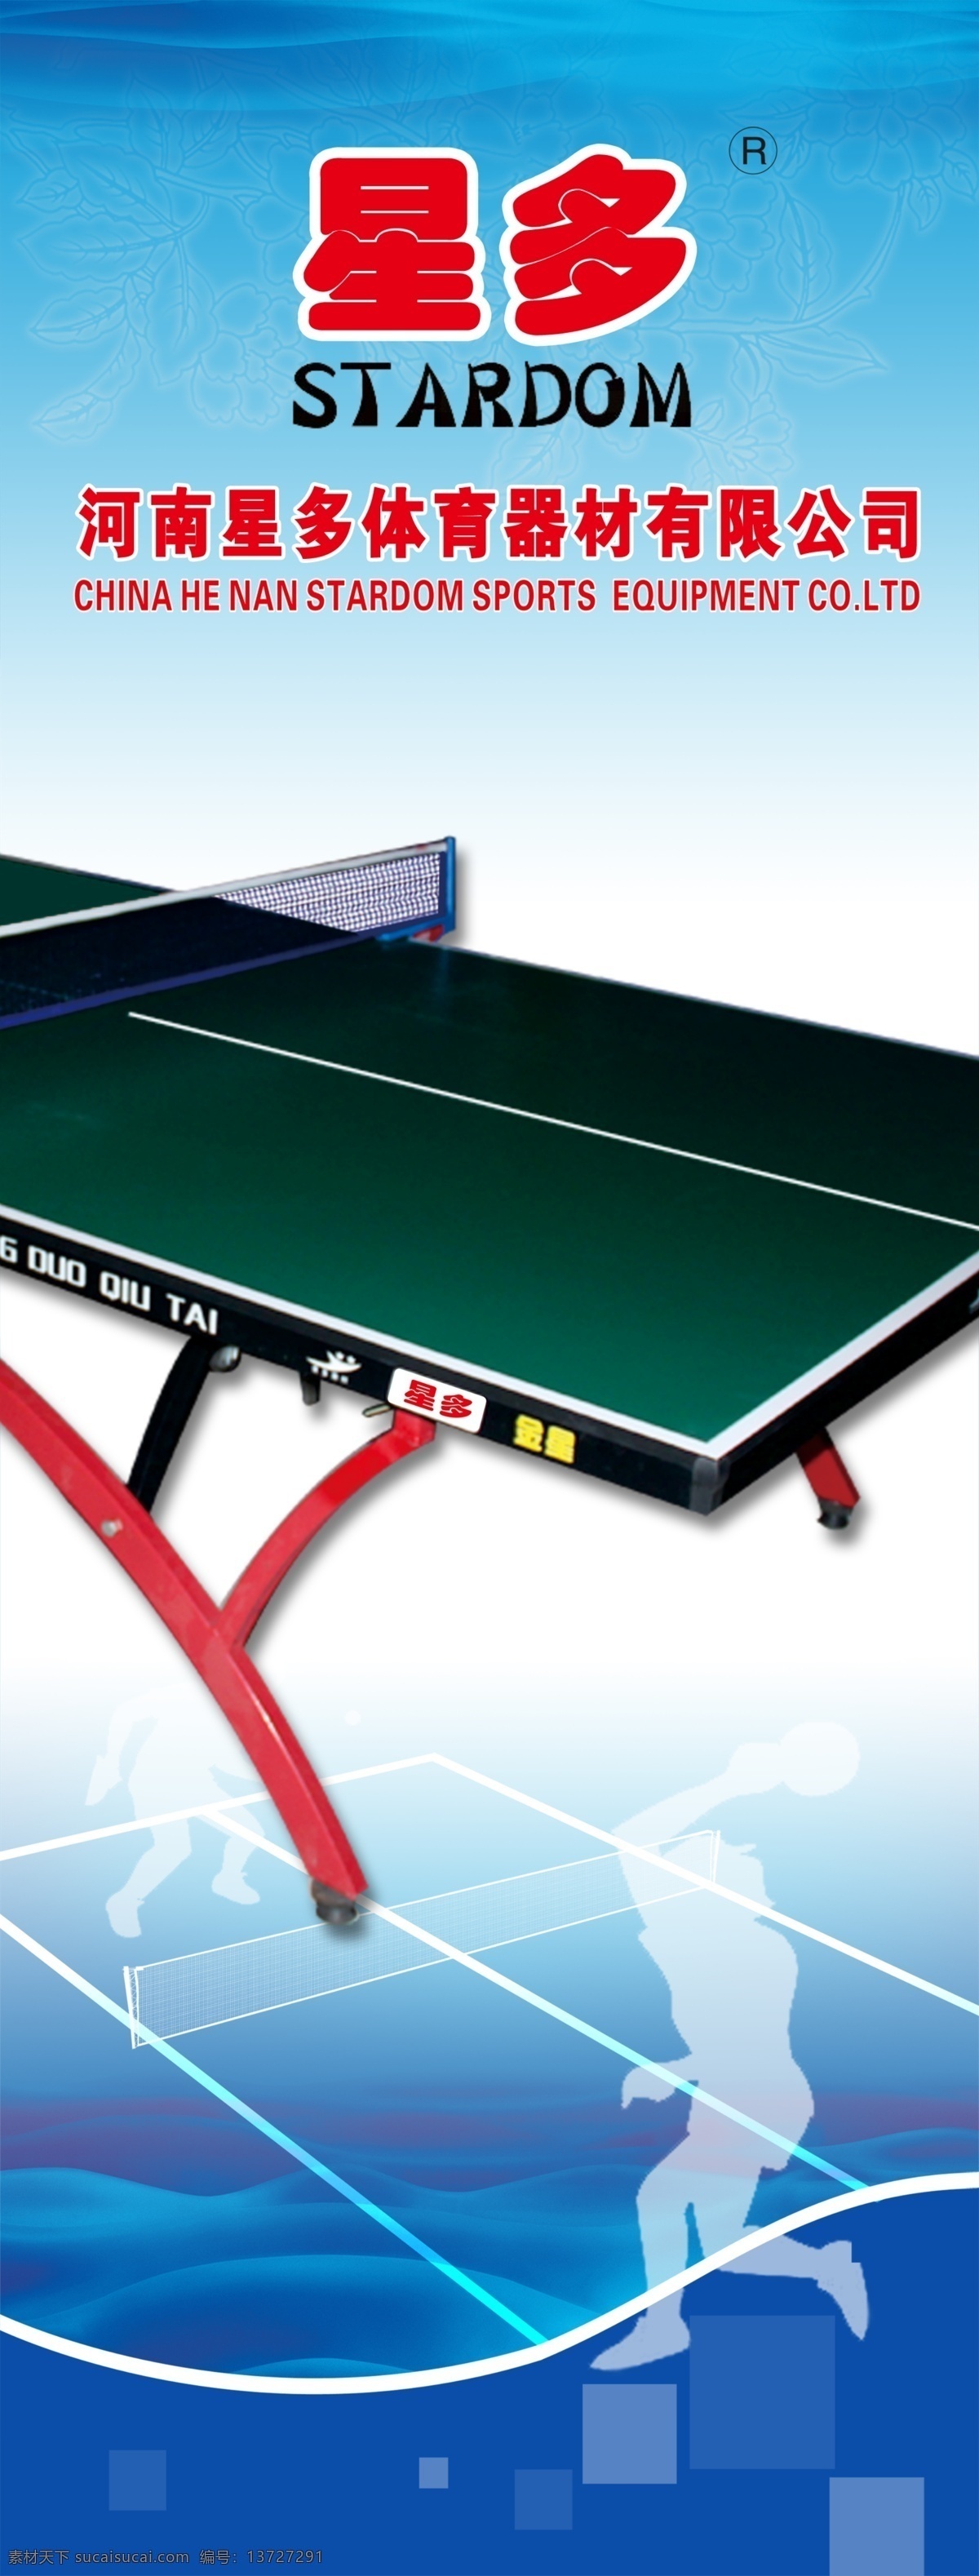 乒乓球台展架 乒乓球台 展架 蓝色背景 乒乓 体育 展板模板 广告设计模板 源文件